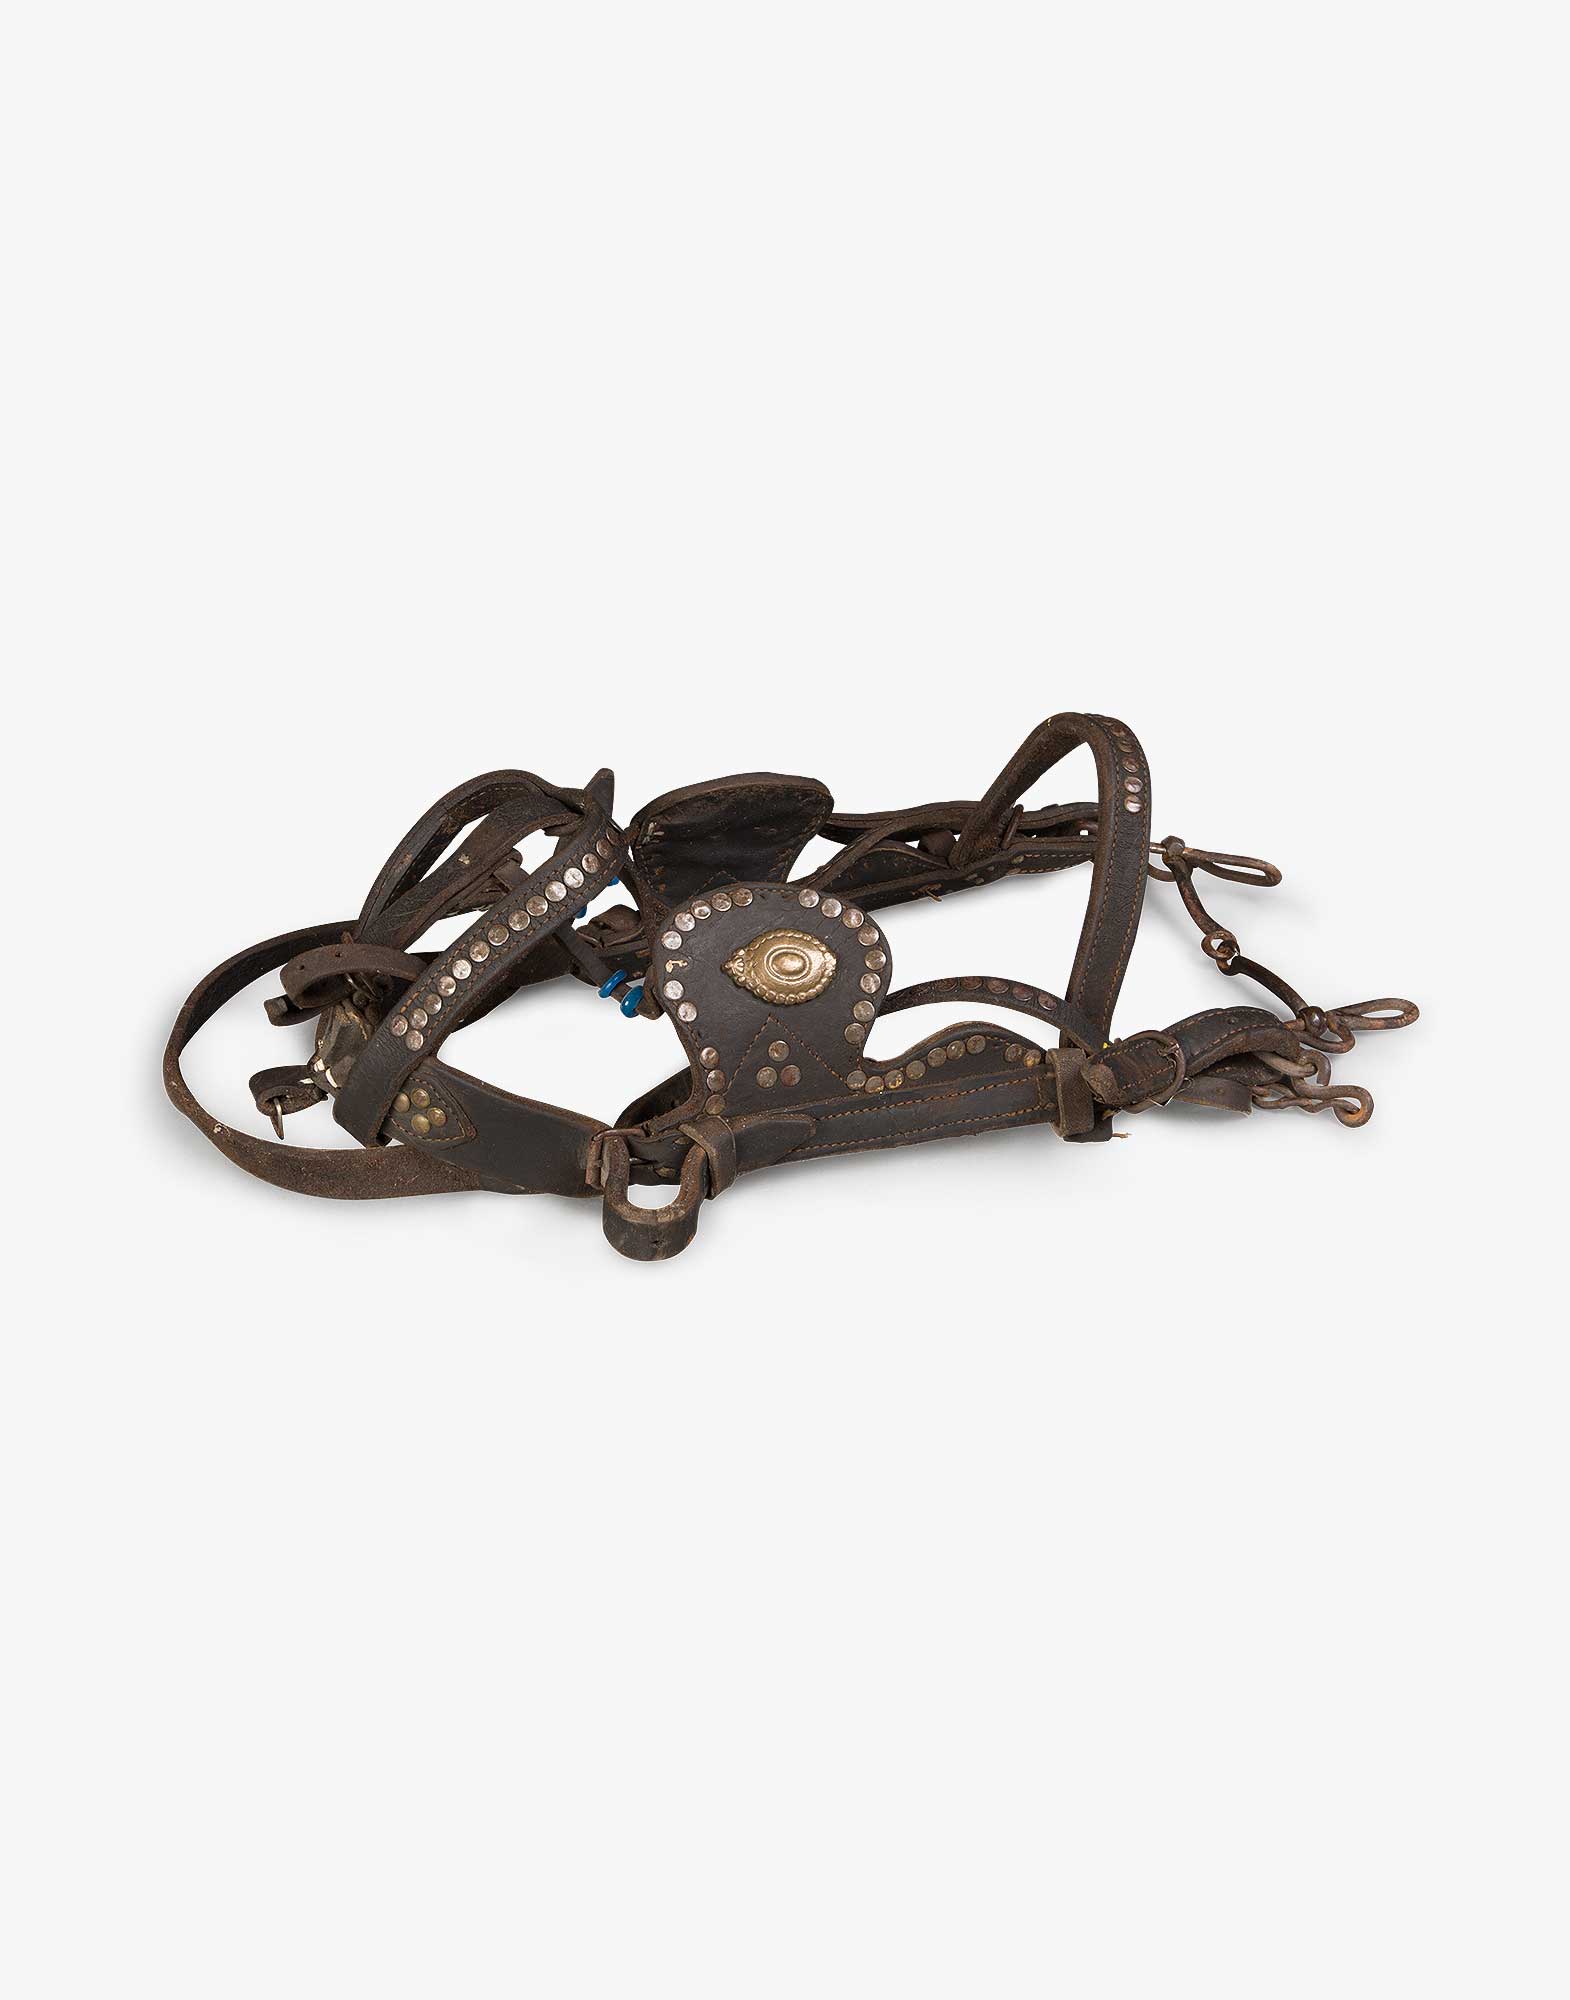 Antique Horse Bridle - Kichy